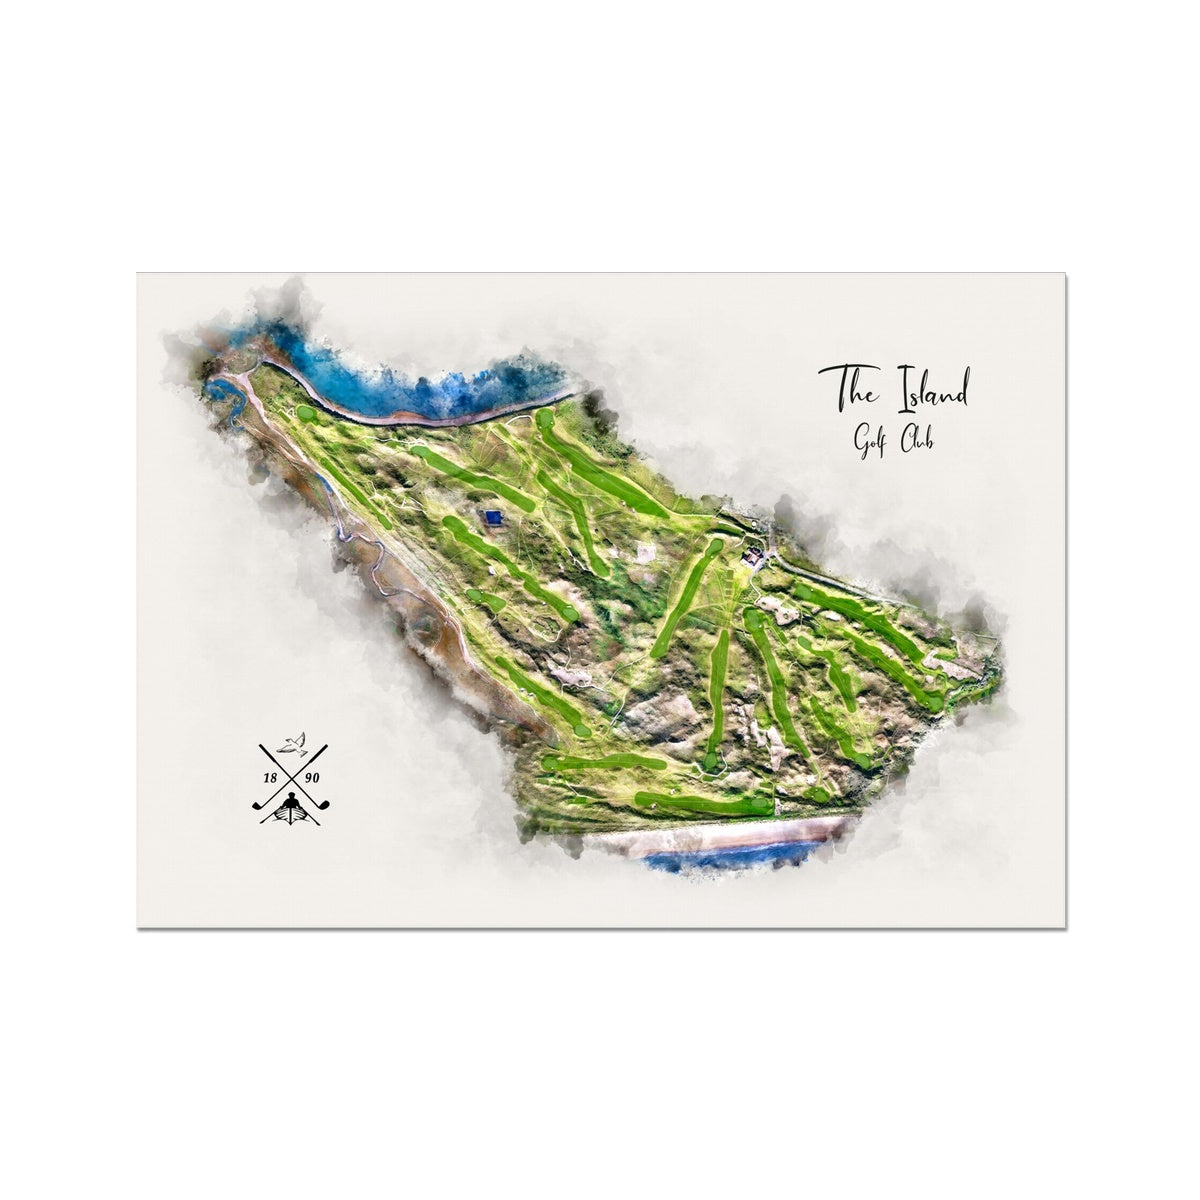 A modern watercolour of The Island Golf Club.